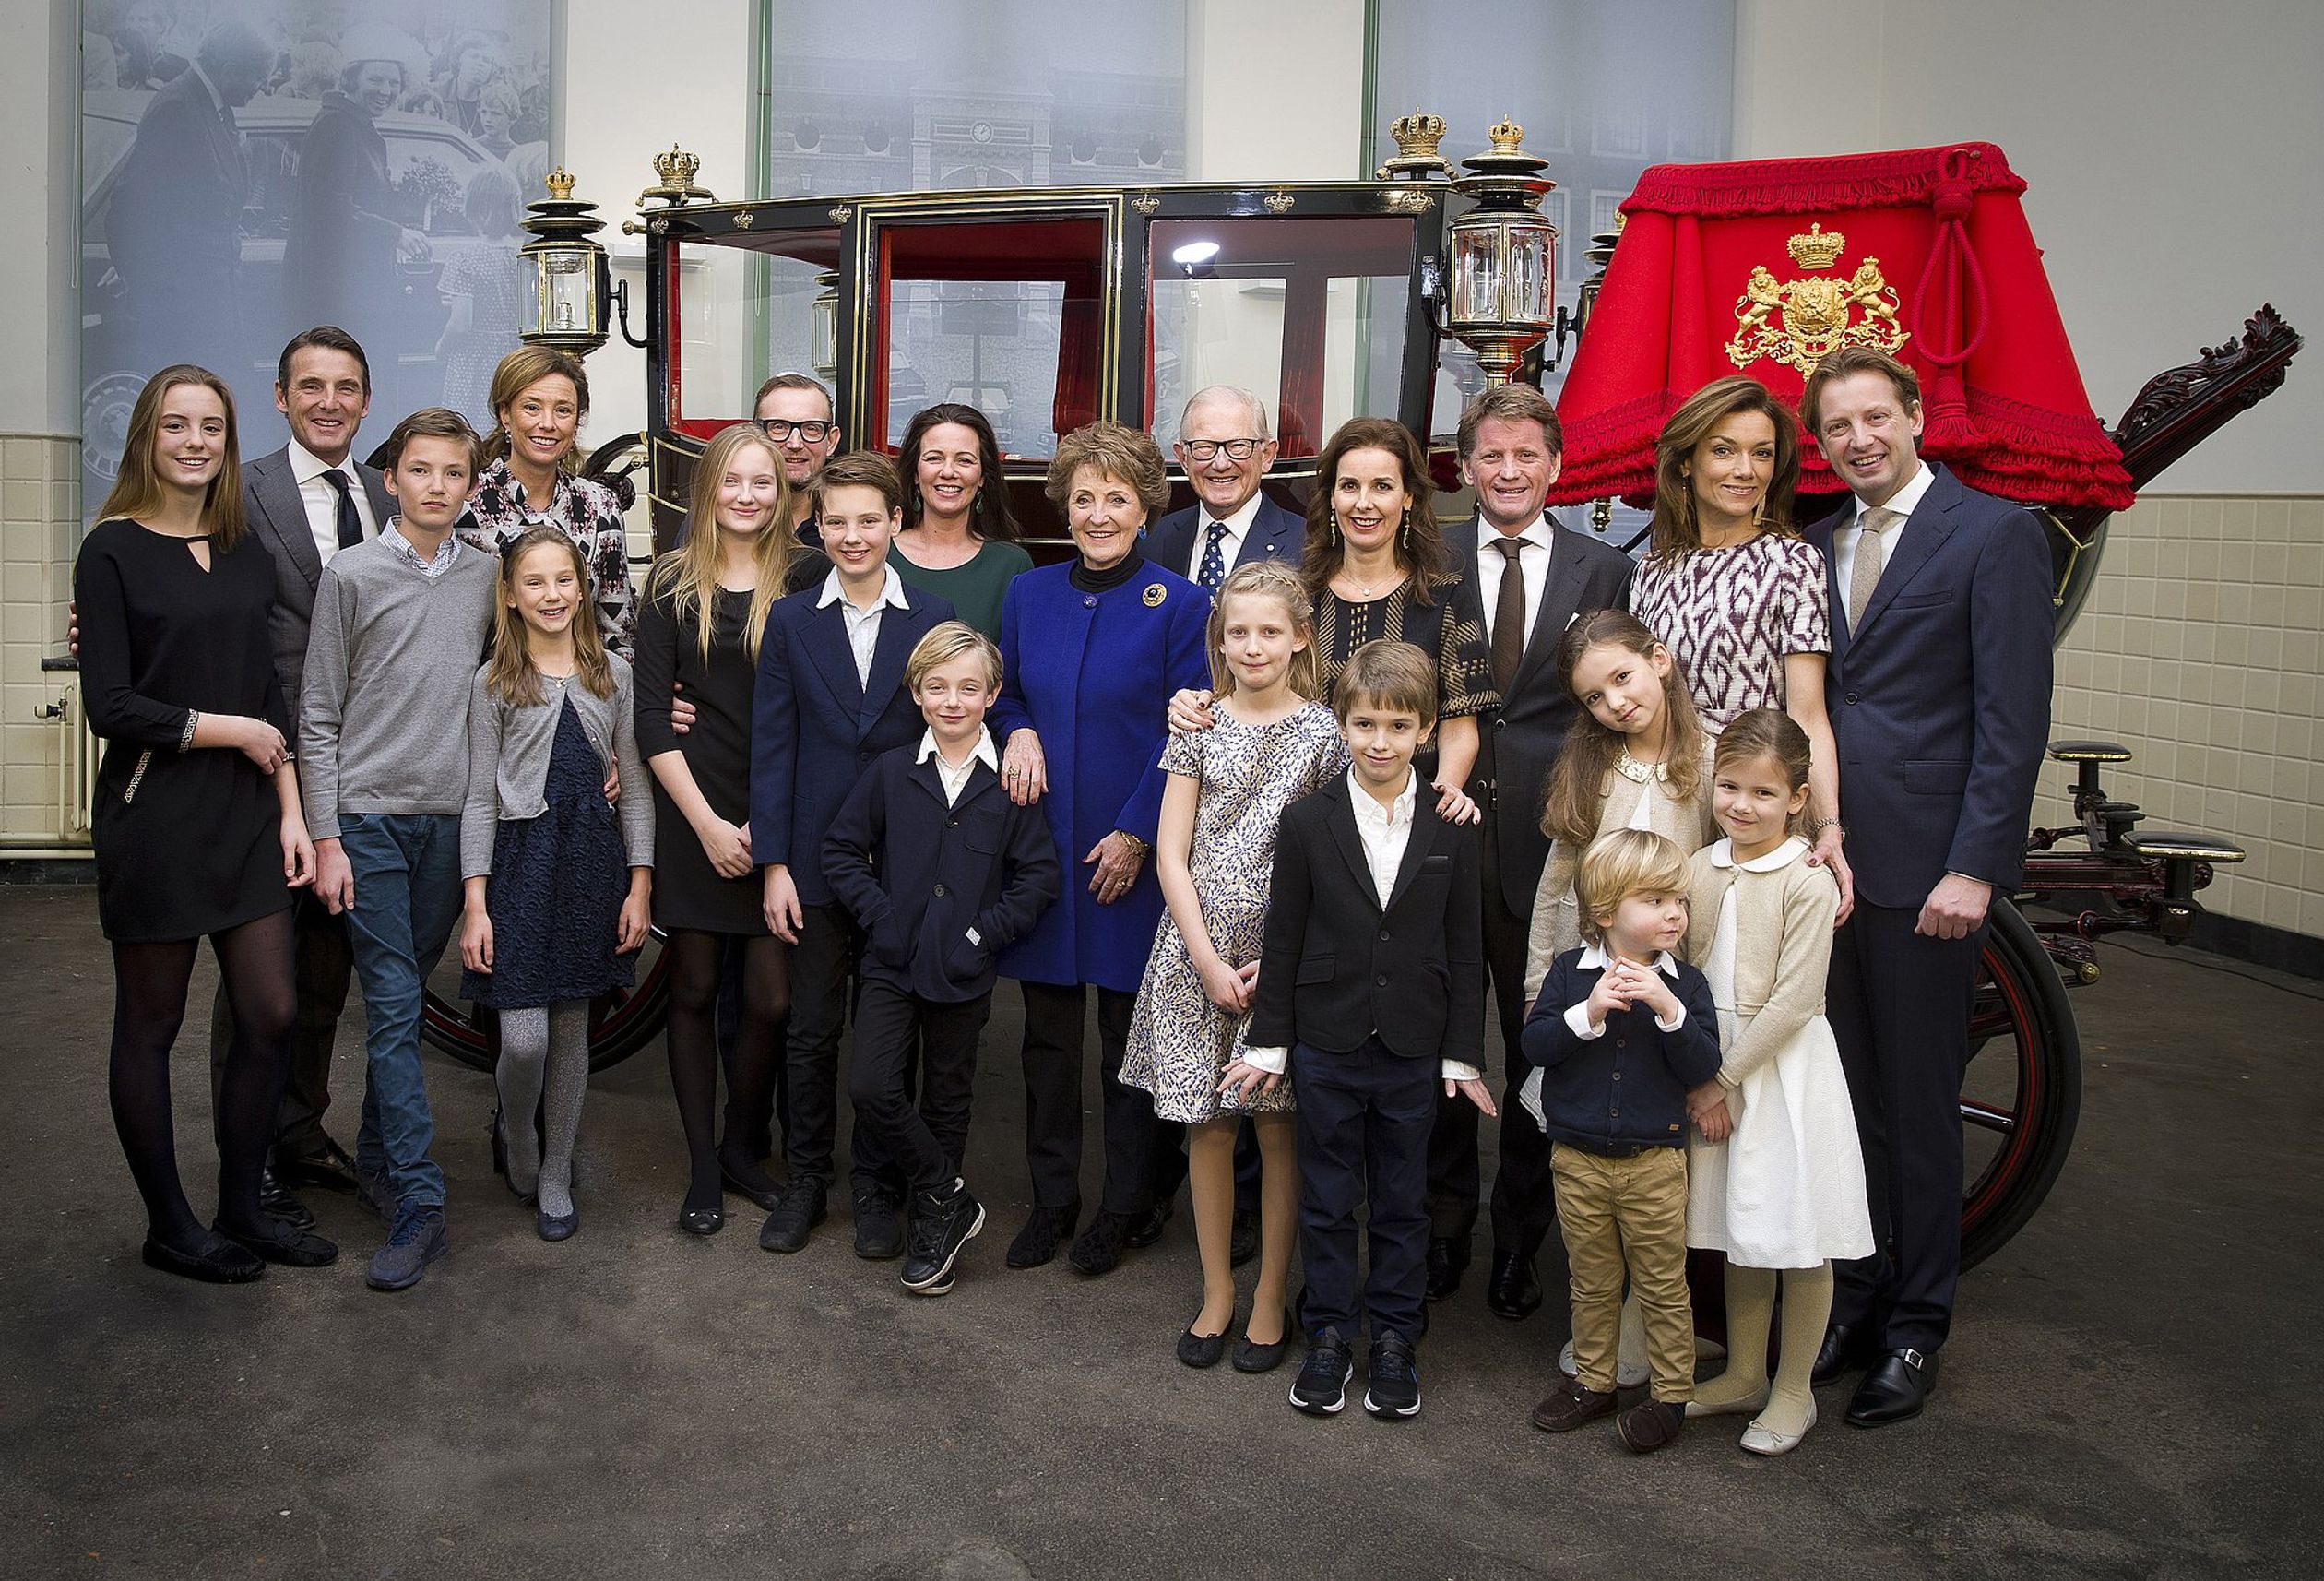 De hele familie voor de Gala Glas Berline waarin Pieter en Margriet werden rondgereden tijdens hun